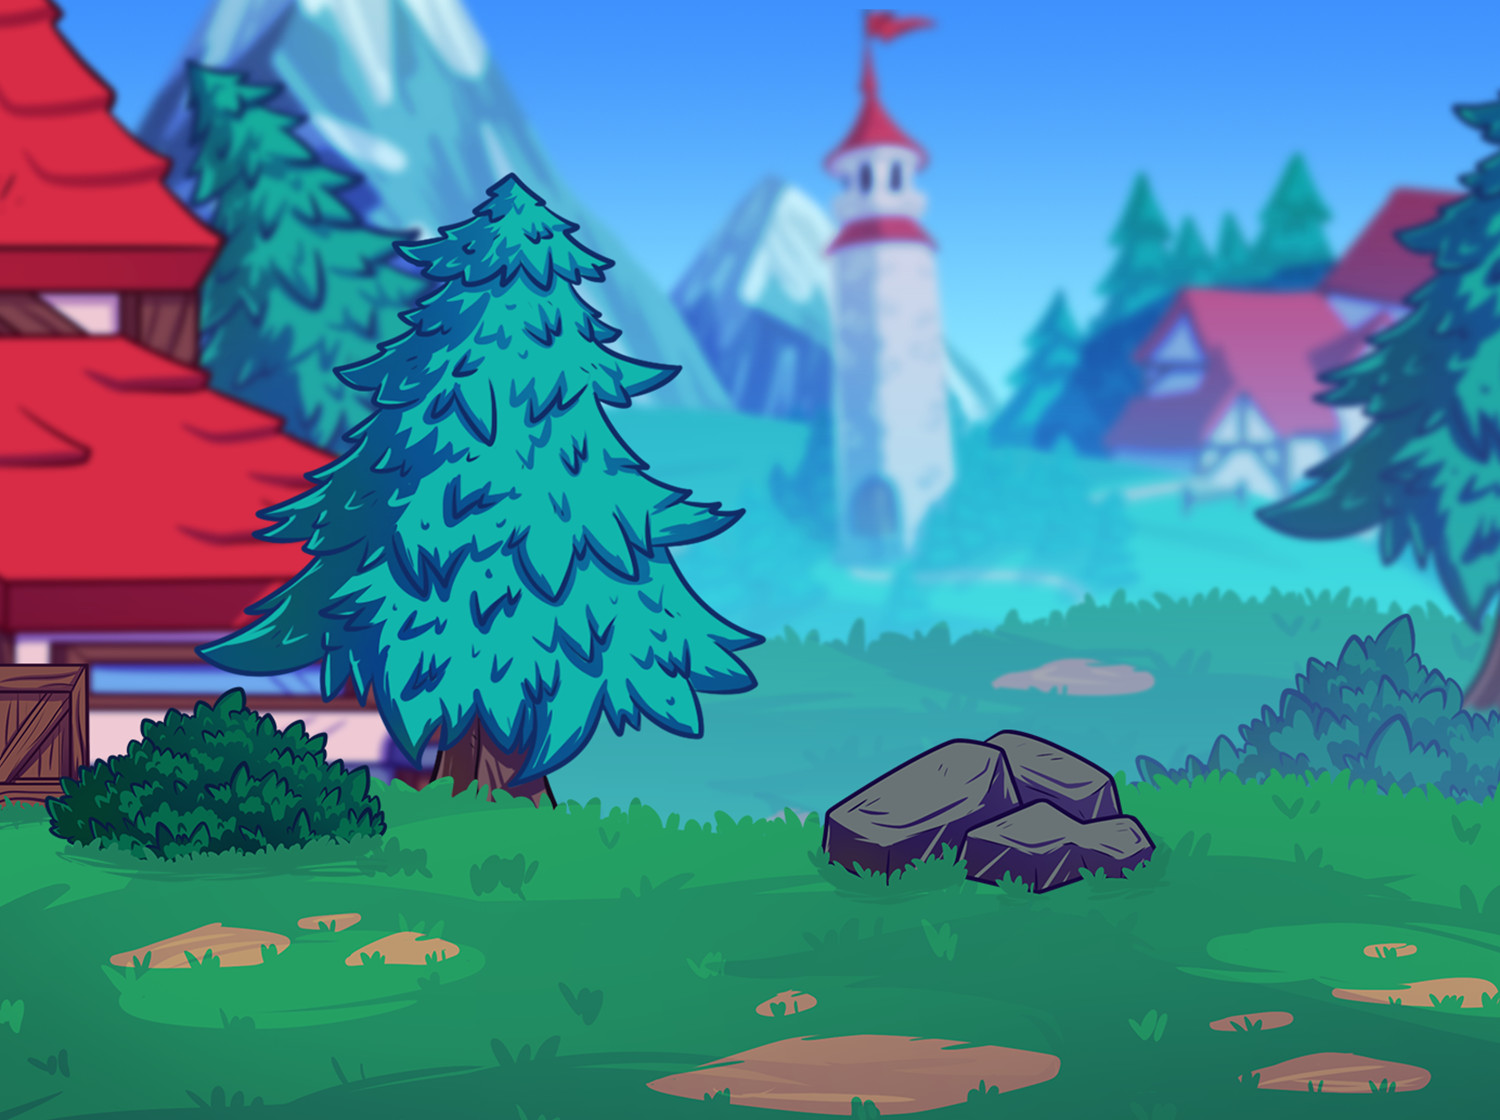 Fantasy Village Background là một thiết kế hình nền game rất xinh đẹp và tràn đầy bí ẩn. Hãy cùng khám phá ngôi làng kiêu hãnh nằm giữa những ngọn núi và mang vẻ đẹp hoang sơ nhưng không kém phần ma mị của game fantasy.